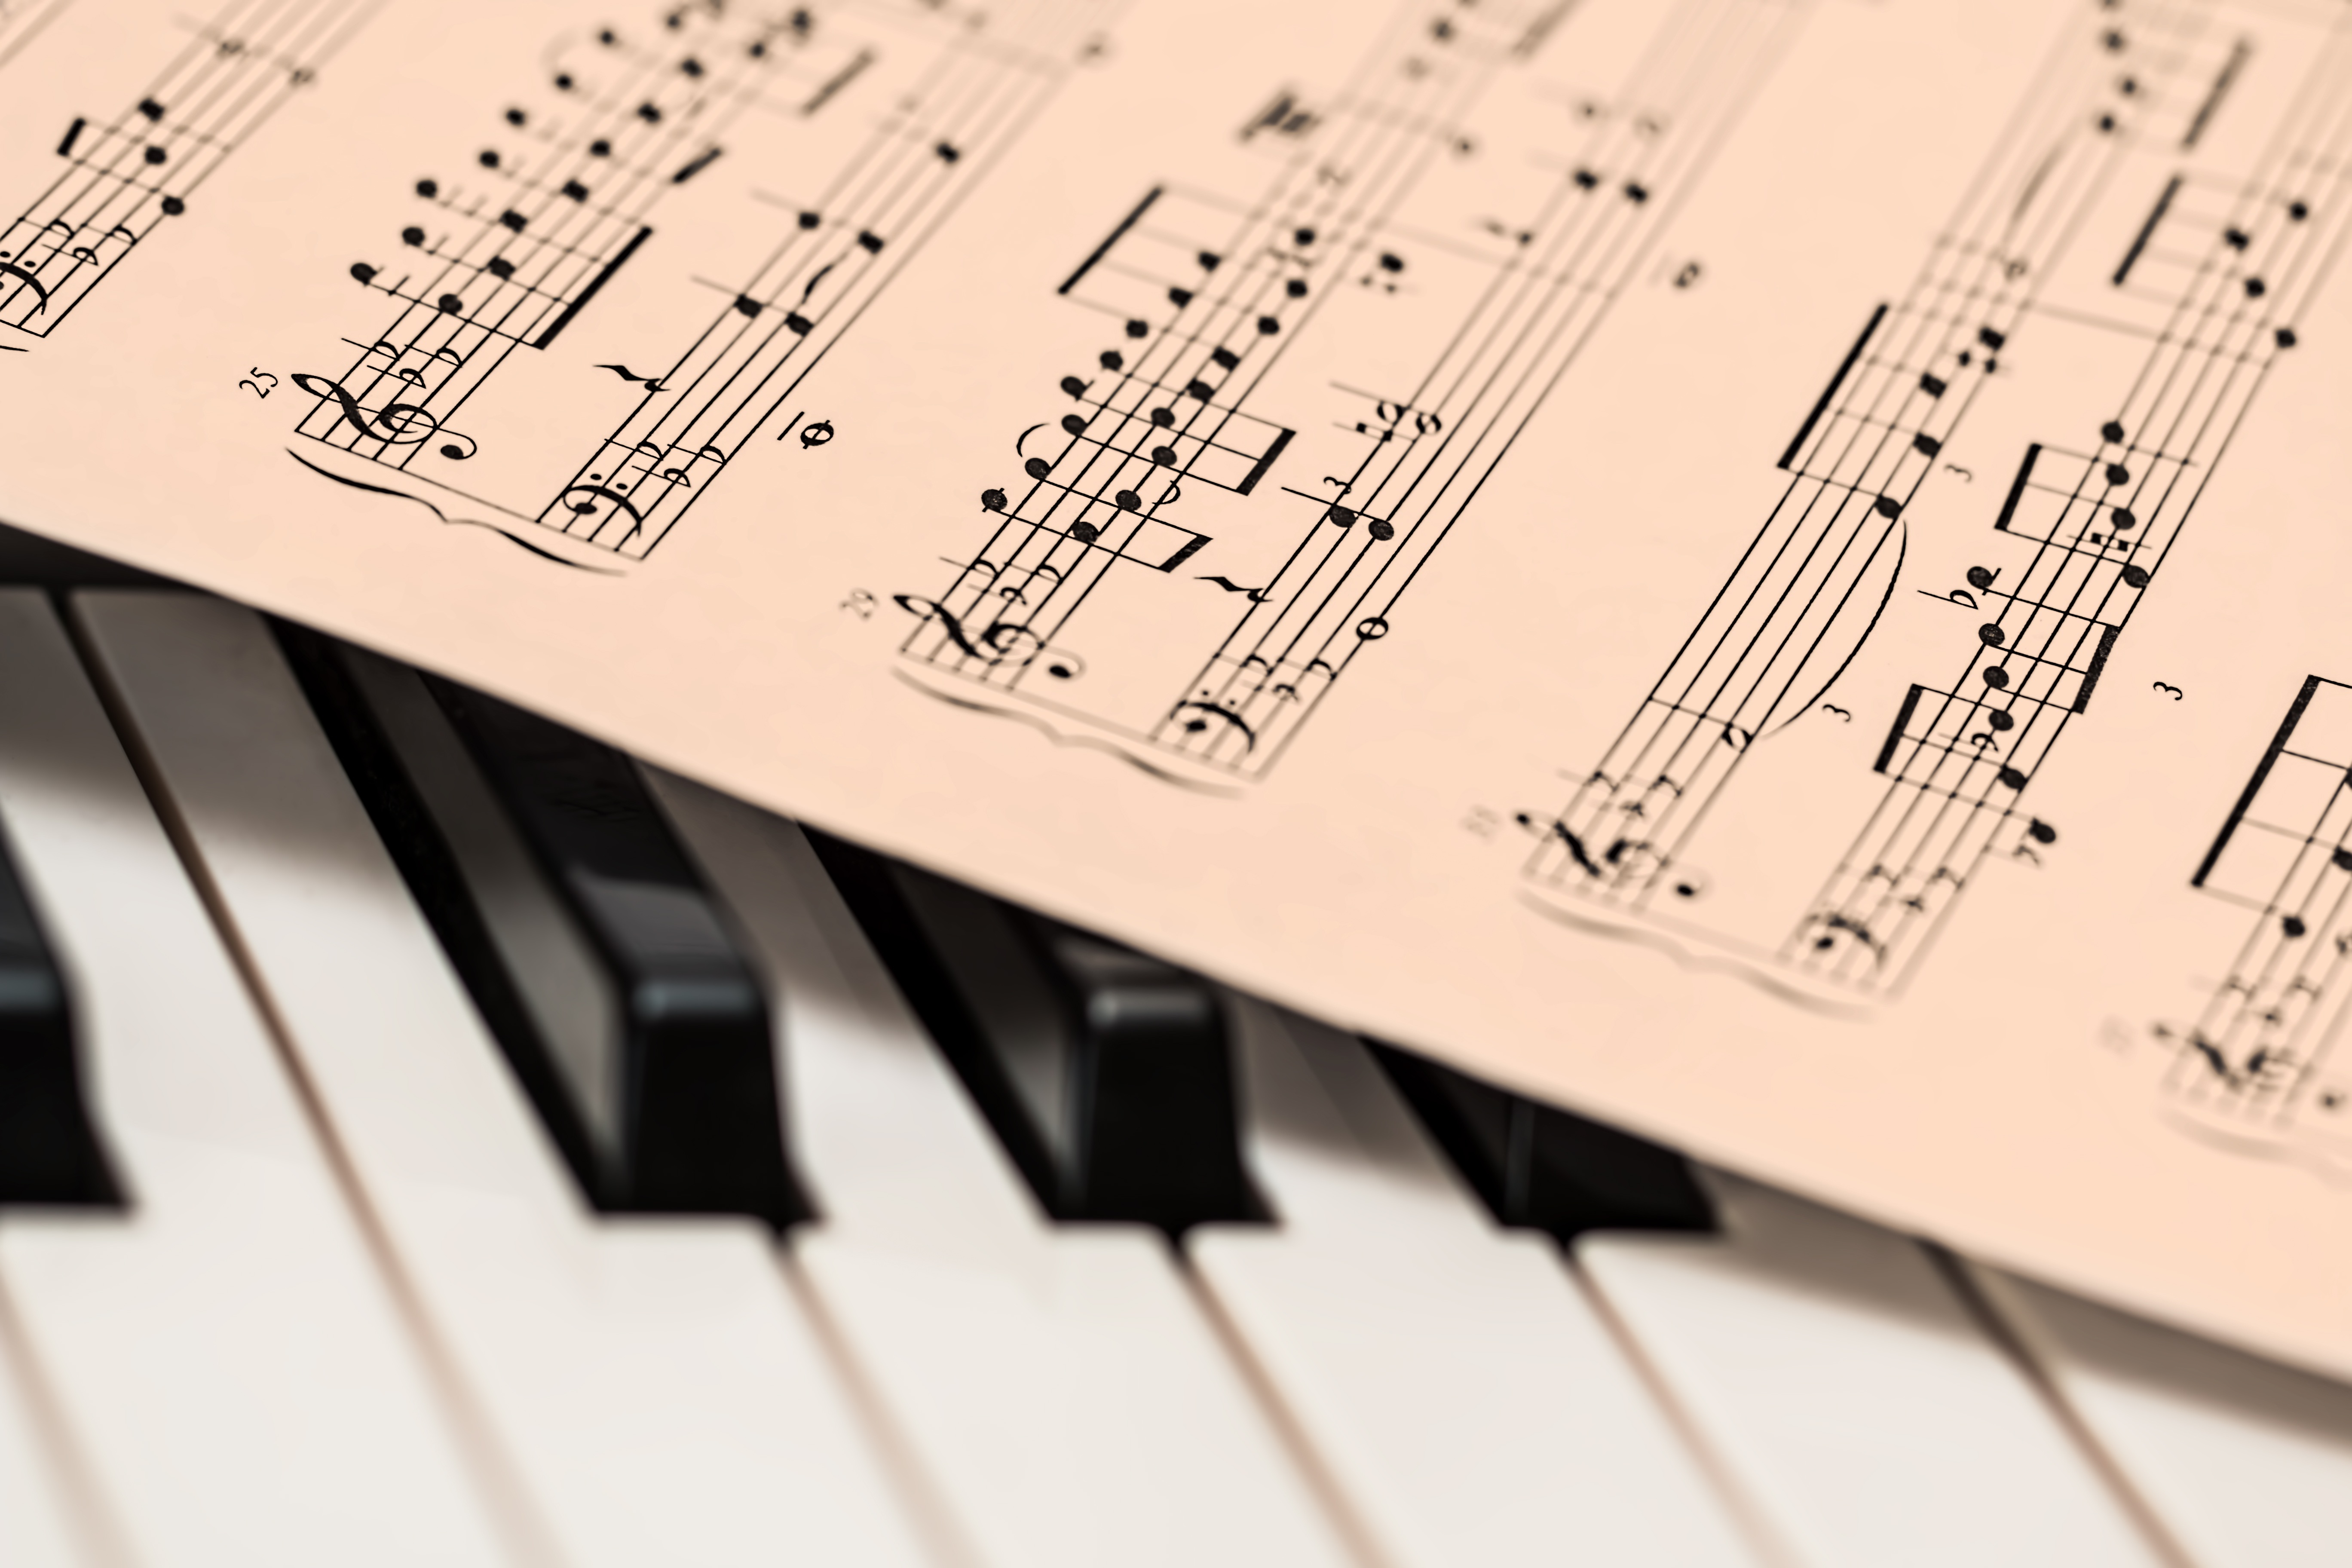 En la imagen aparece una partitura de una canción encima de un piano